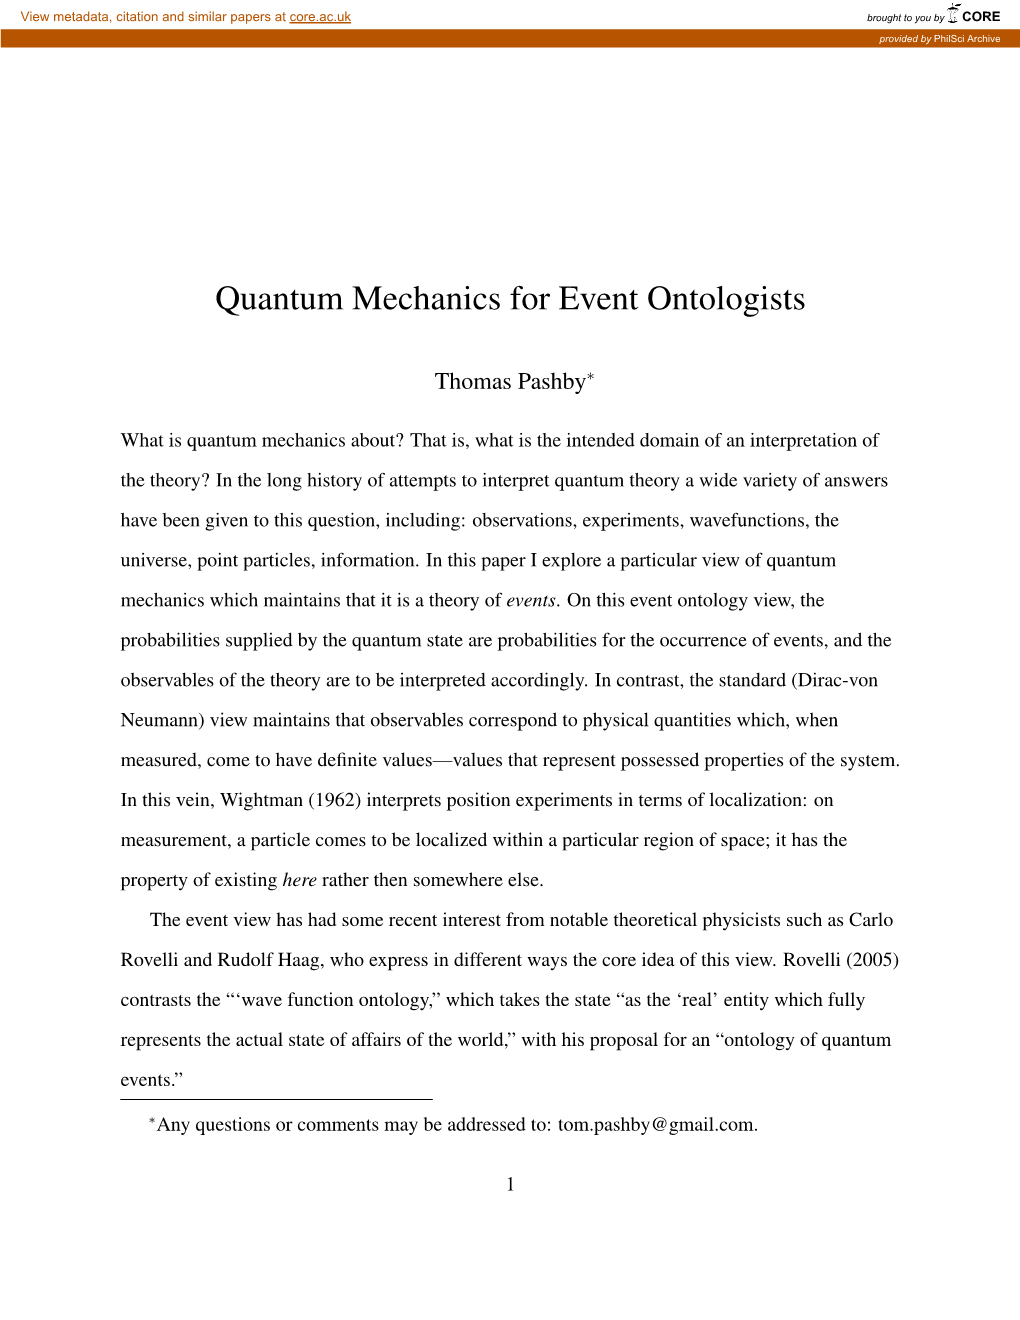 Quantum Mechanics for Event Ontologists